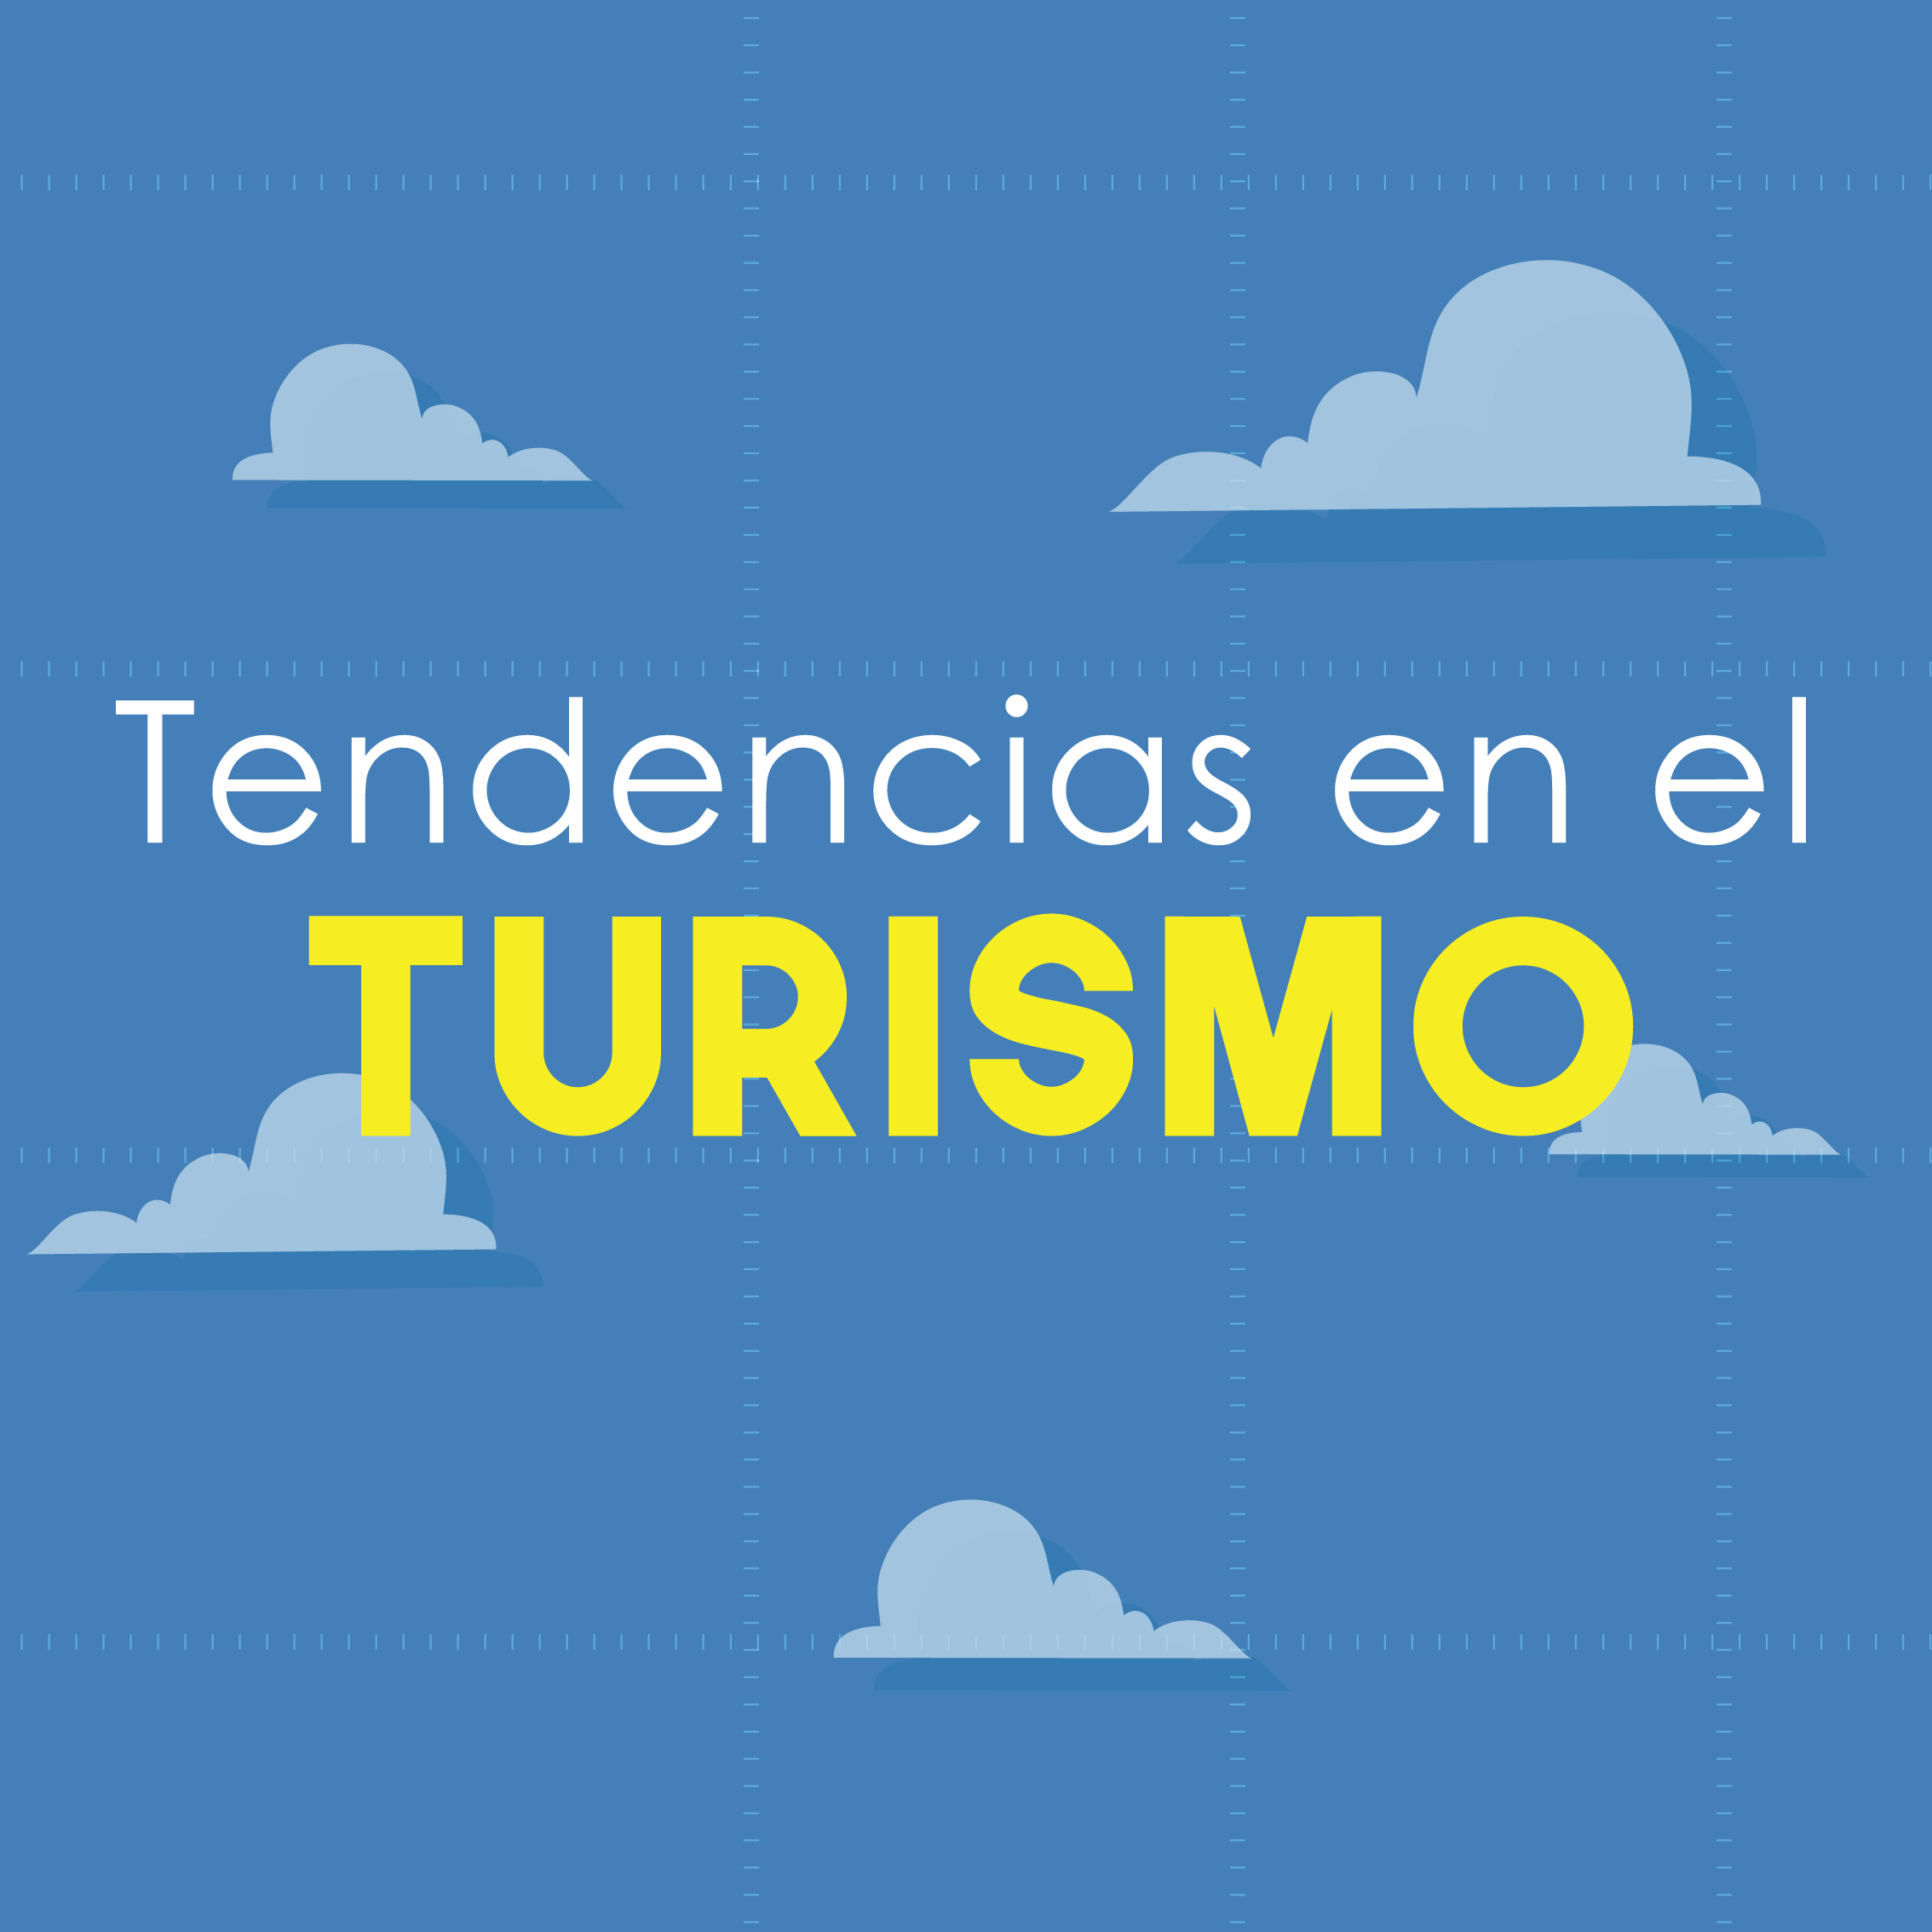 images/revista/Mini-tendencias-turismo.jpg